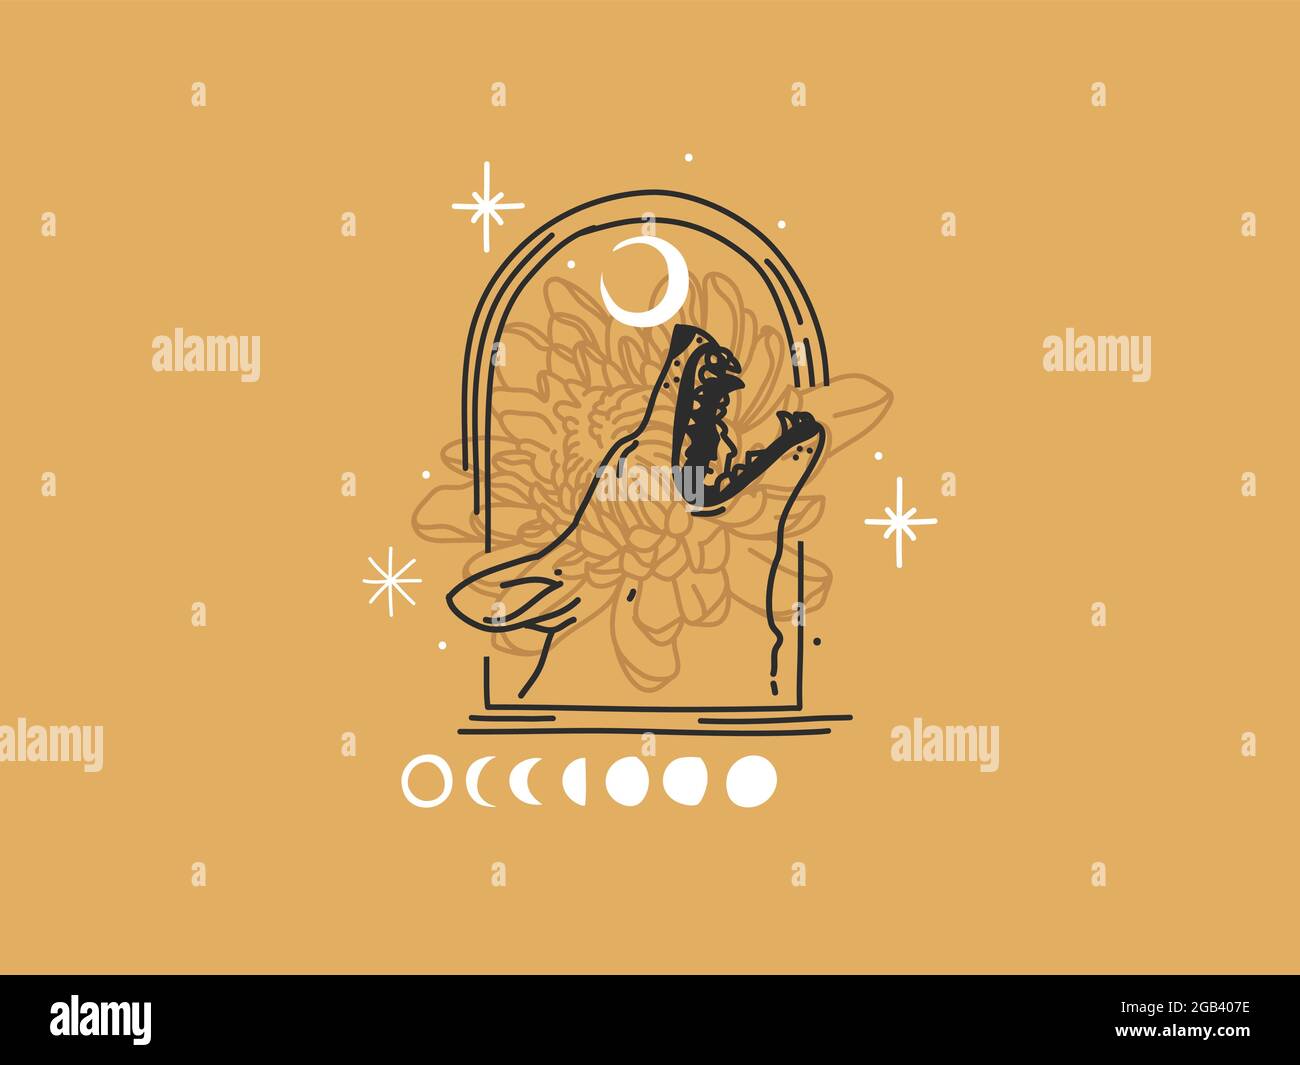 Illustrazione grafica piatta del vettore astratto disegnata a mano con elementi del logo, testa del lupo urlante e arte della linea magica della luna in stile semplice per marcare a caldo Illustrazione Vettoriale